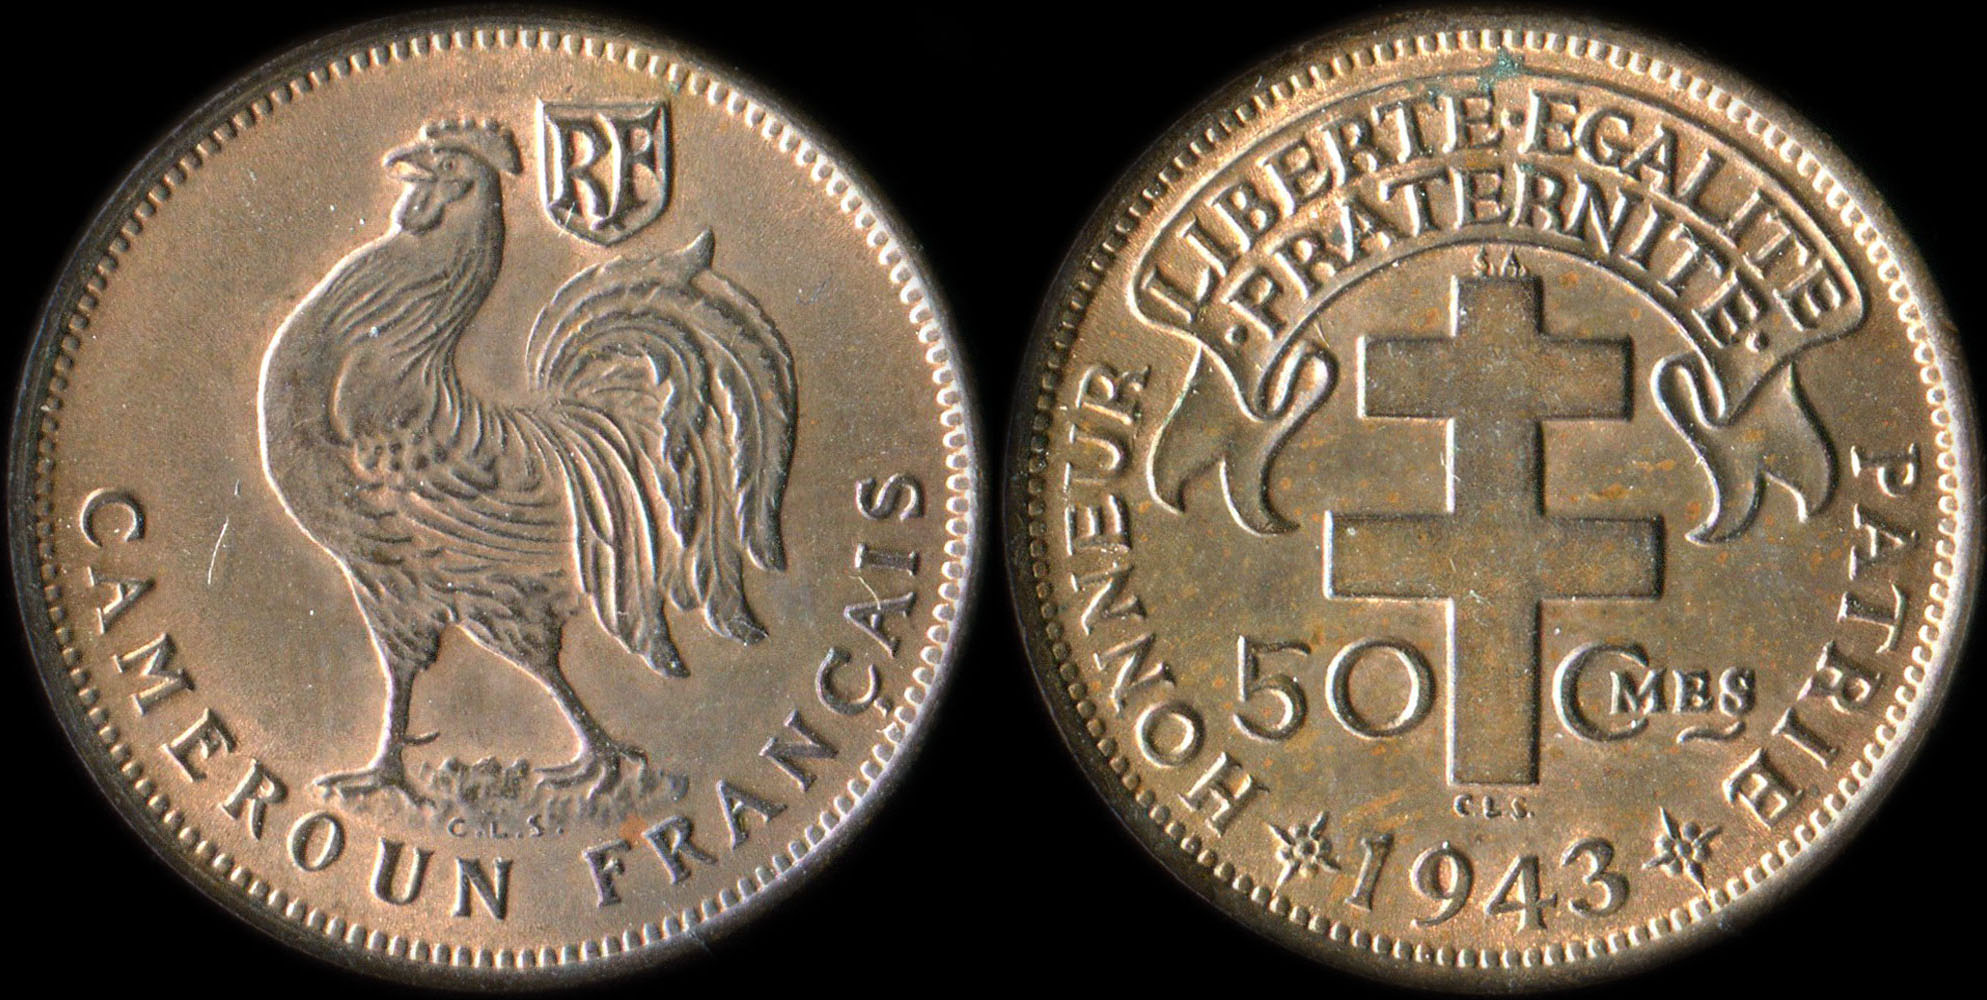 Pice de 50 centimes 1943 Cameroun Franais